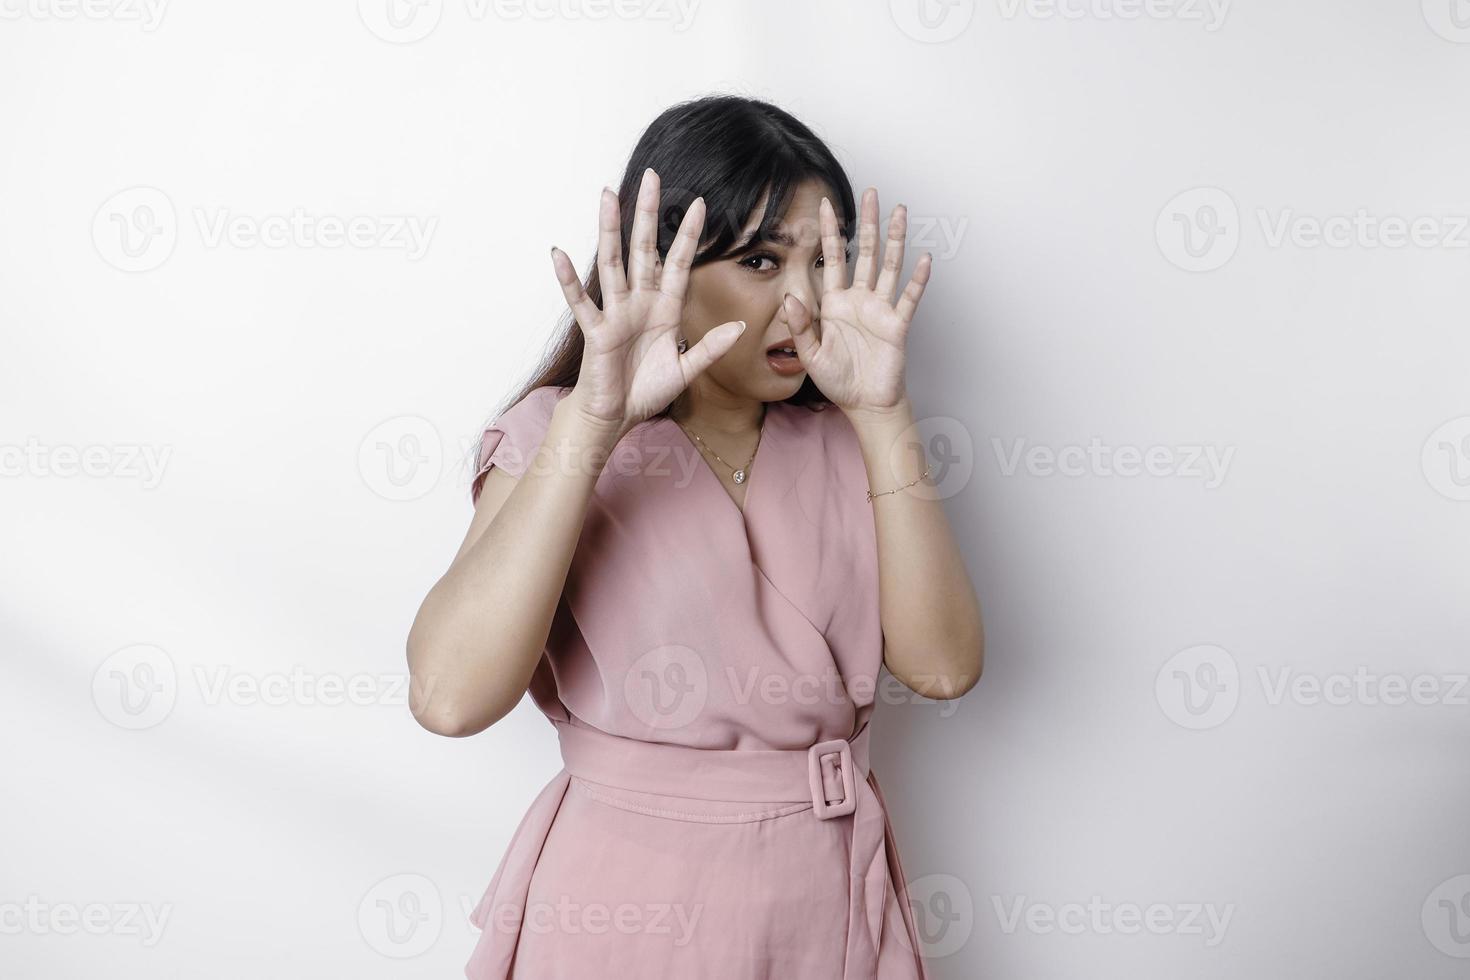 jovem mulher asiática isolada no fundo branco, parece deprimida, rosto coberto por dedos assustados e nervosos. foto